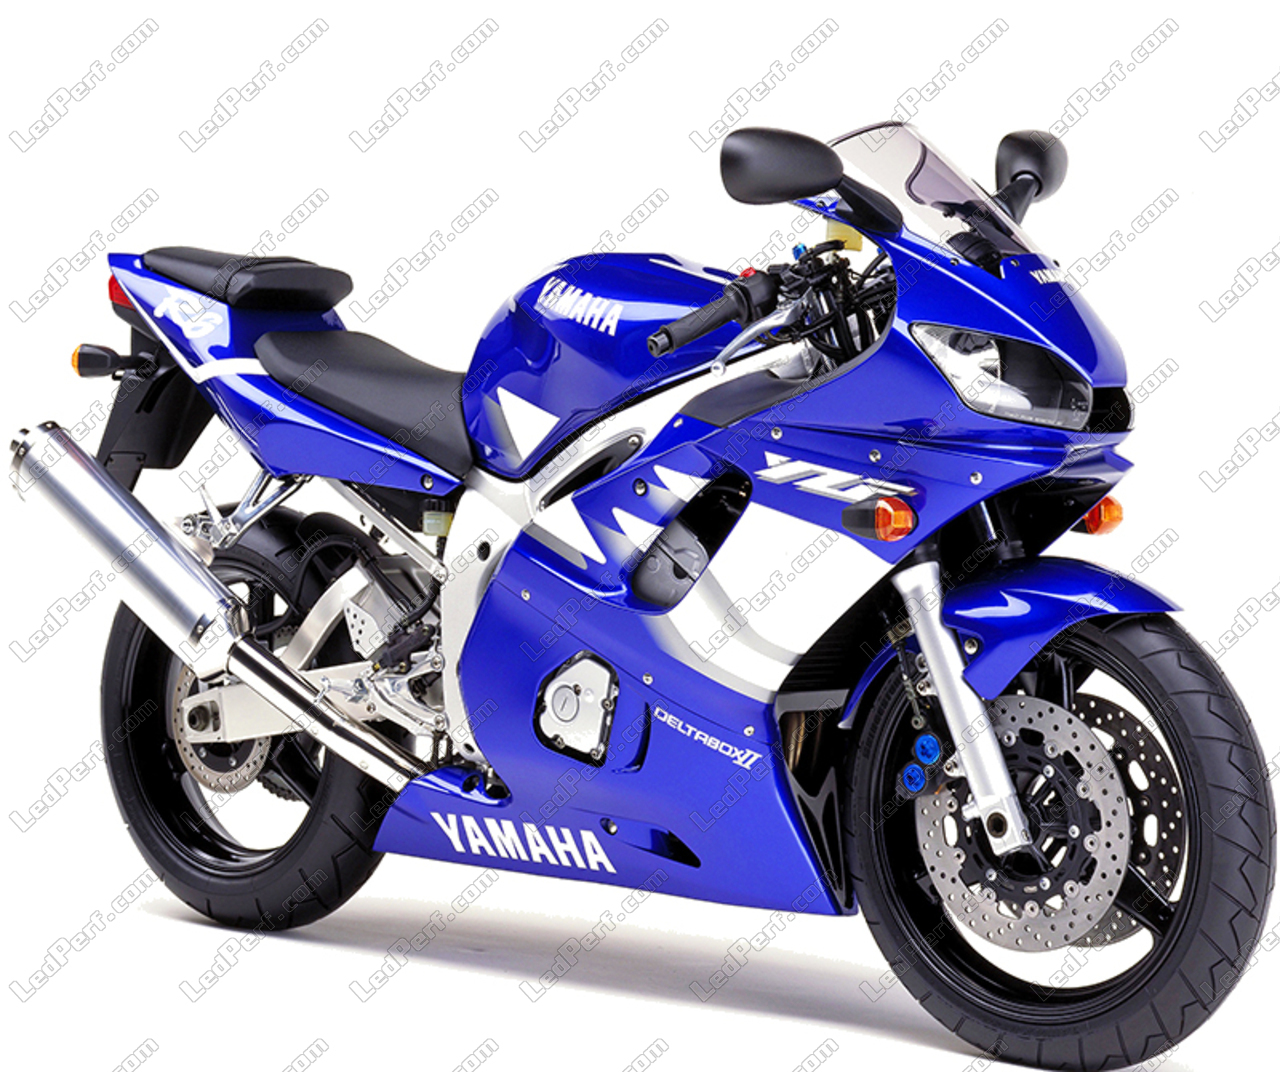 https://www.ledperf.us/images/models/ledperf.com/._1/led-bulbs-kit-for-yamaha-yzf-r6-600-1999-2000-motorcycle_52898.jpg